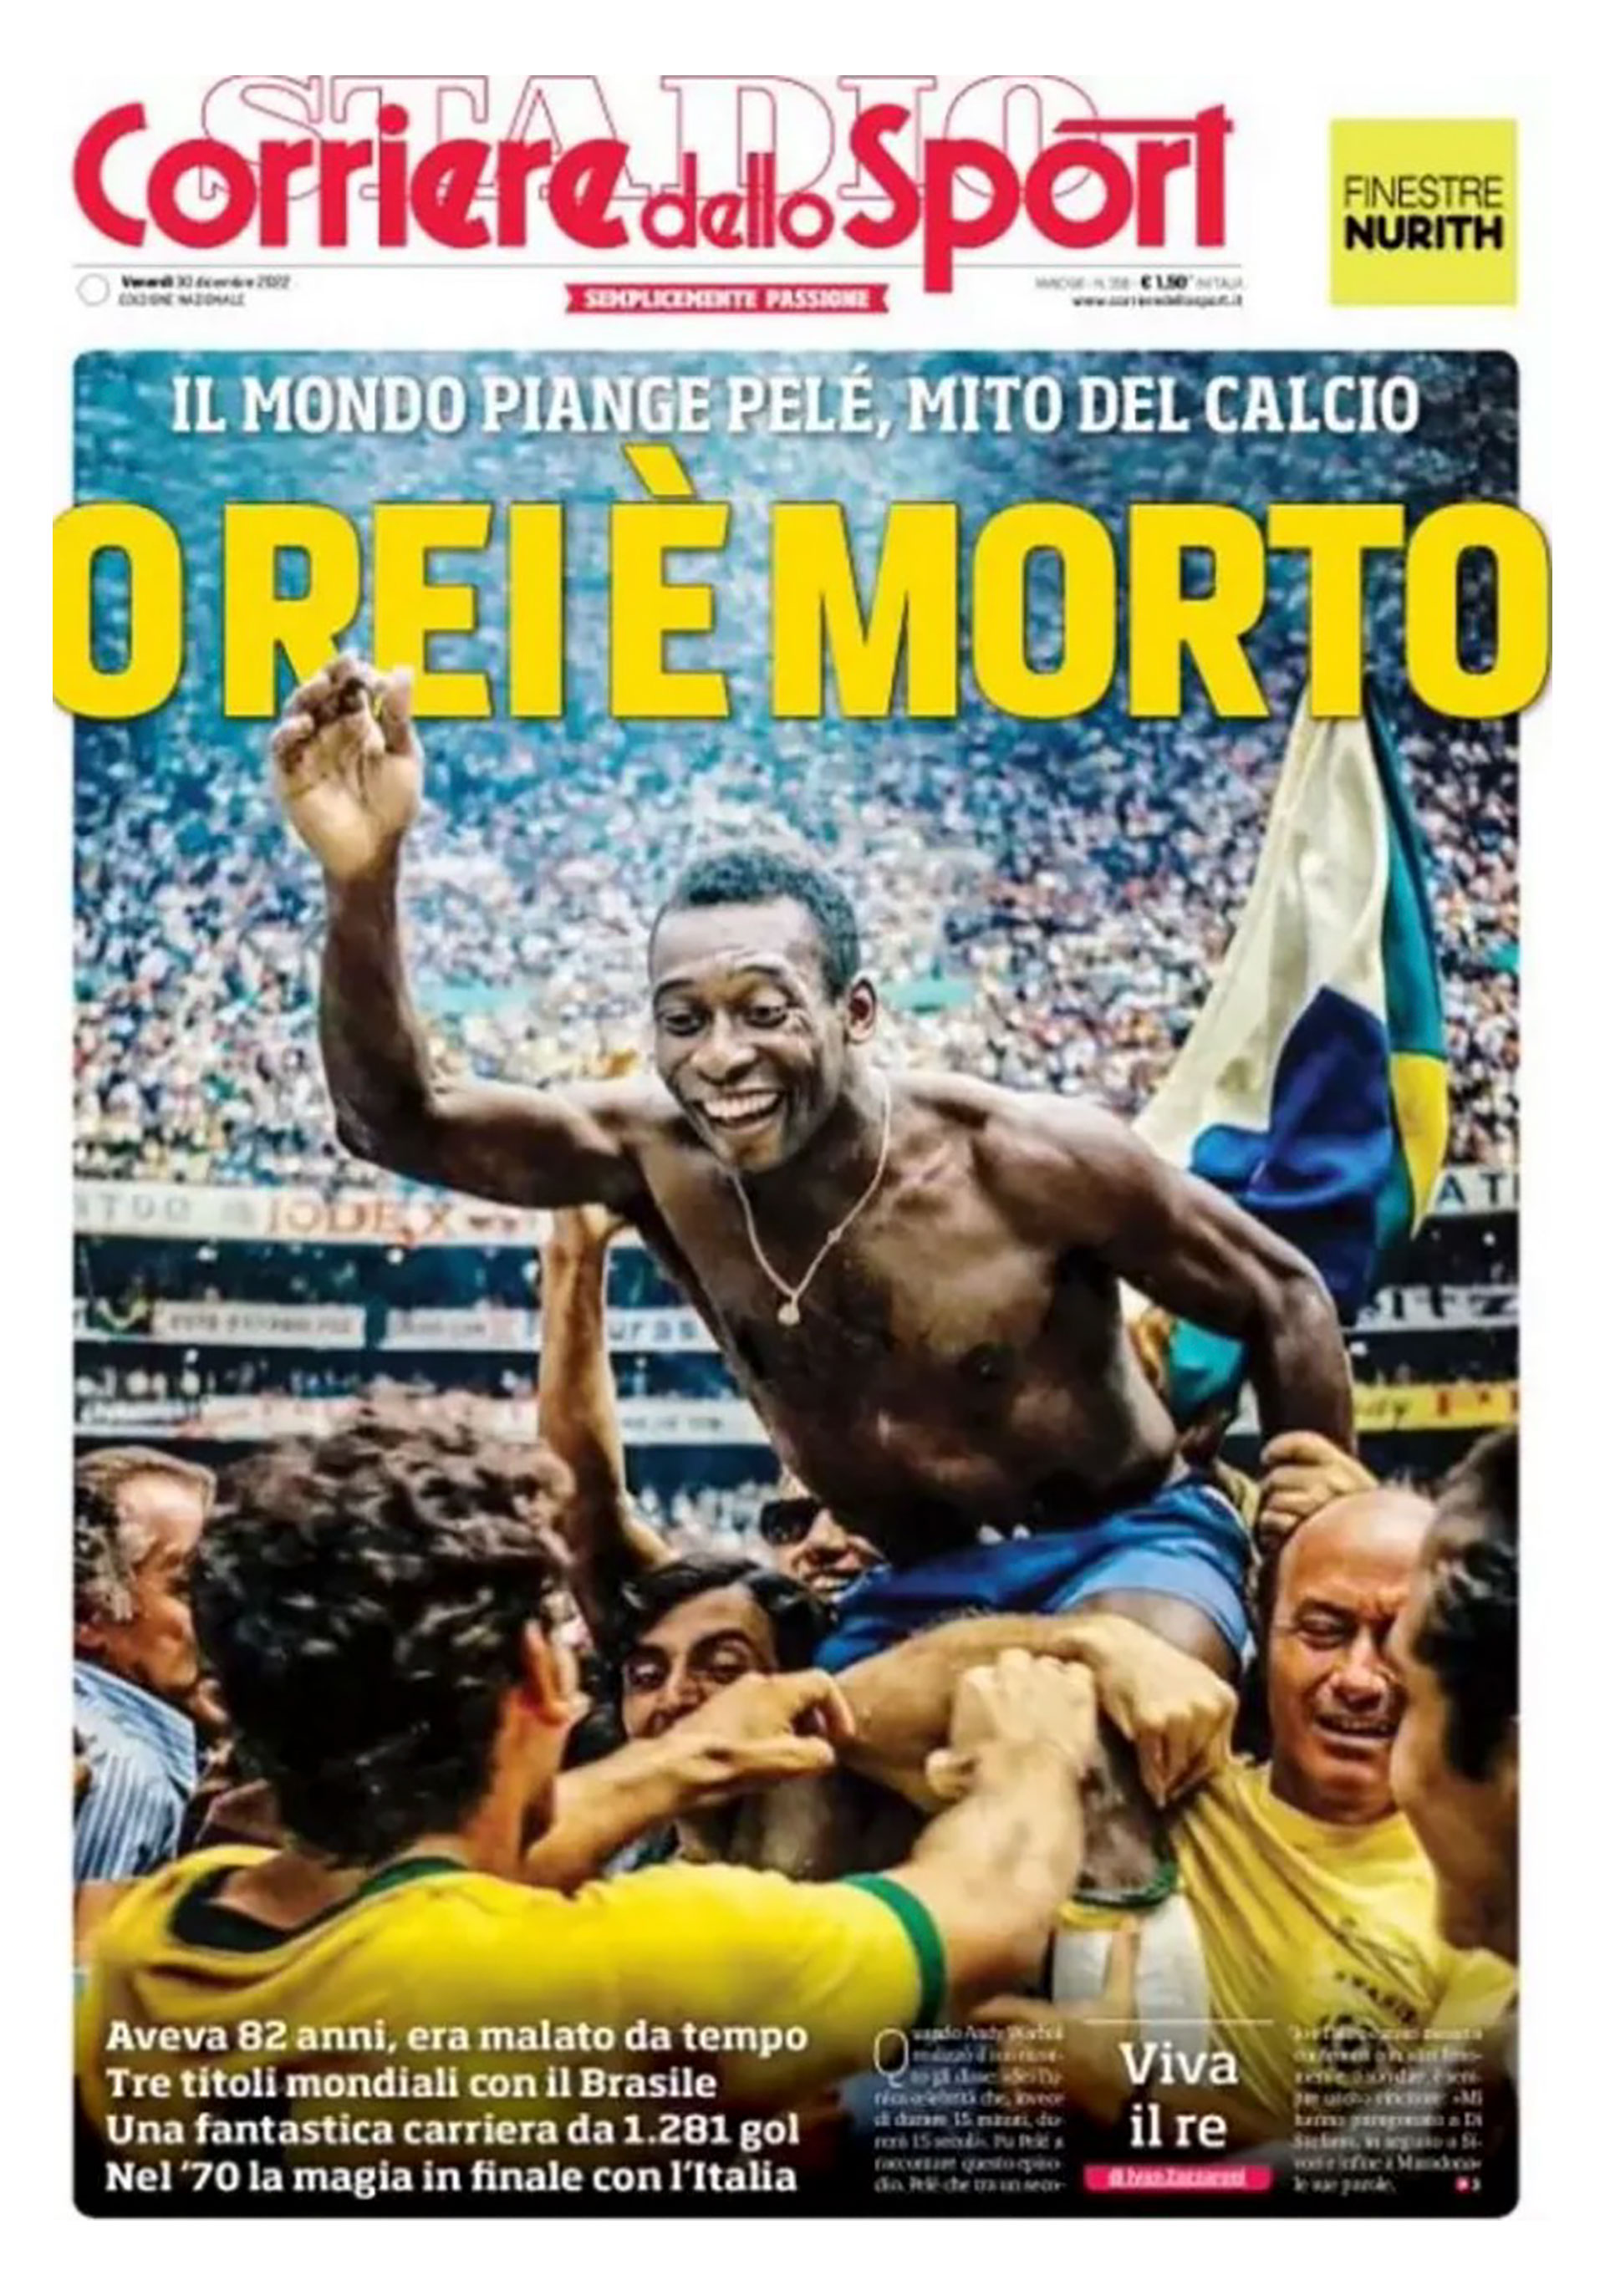 "El rey ha muerto", el título del Corriere dello Sport por Pelé